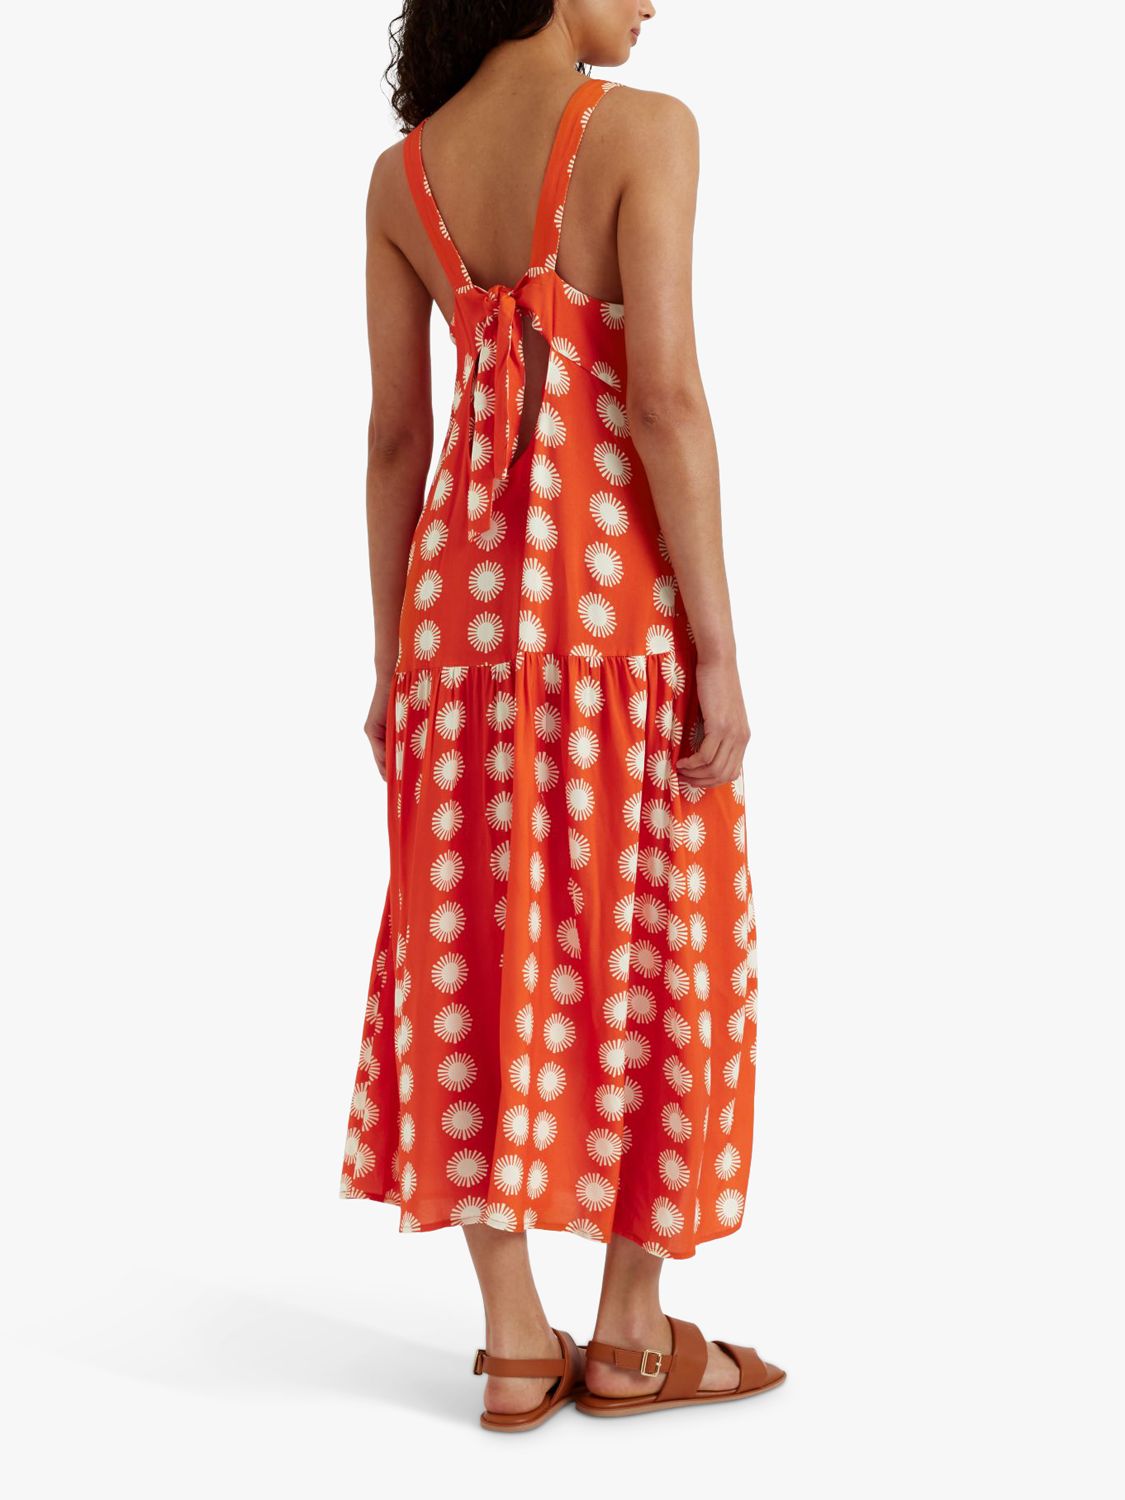 Chinti & Parker Formentera Midi Dress, Orange/Cream, 6